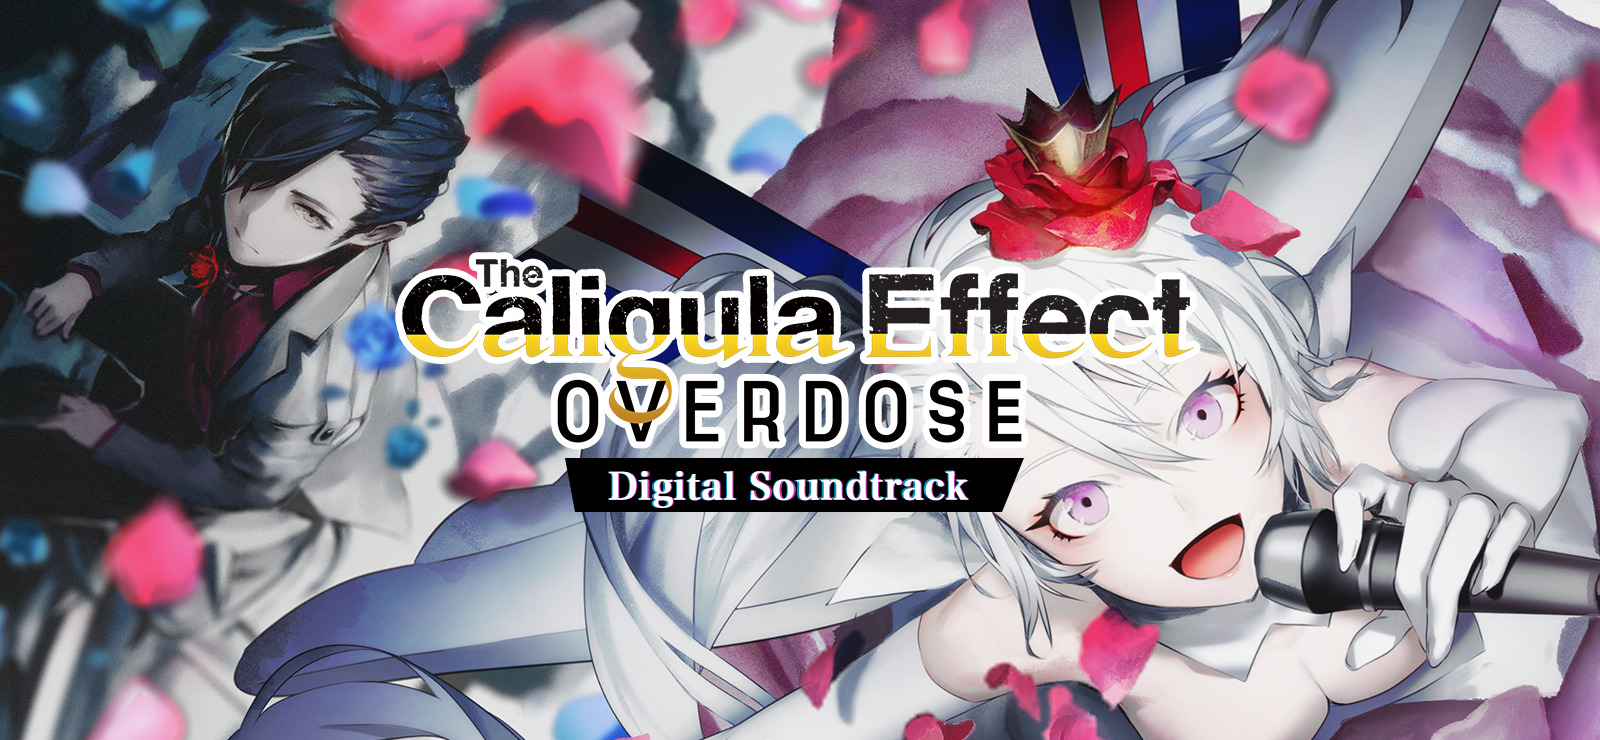 The Caligula Effect: Overdose - Digital Soundtrack DLC Steam CD Key